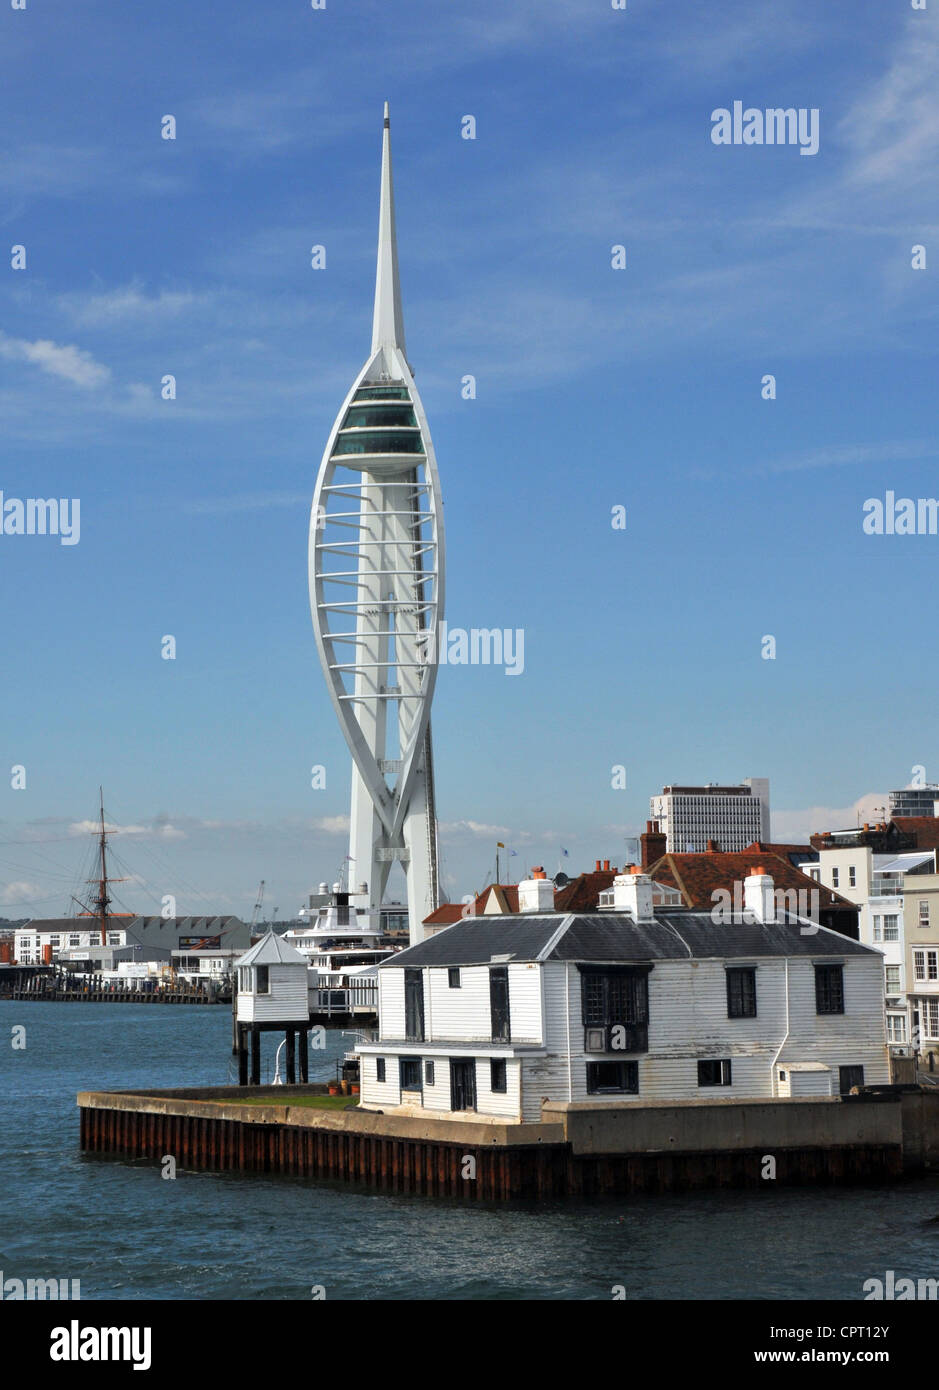 Der Spinnaker Tower und altes Zollhaus am Eingang zum Hafen von Portsmouth, Hampshire, England. Stockfoto